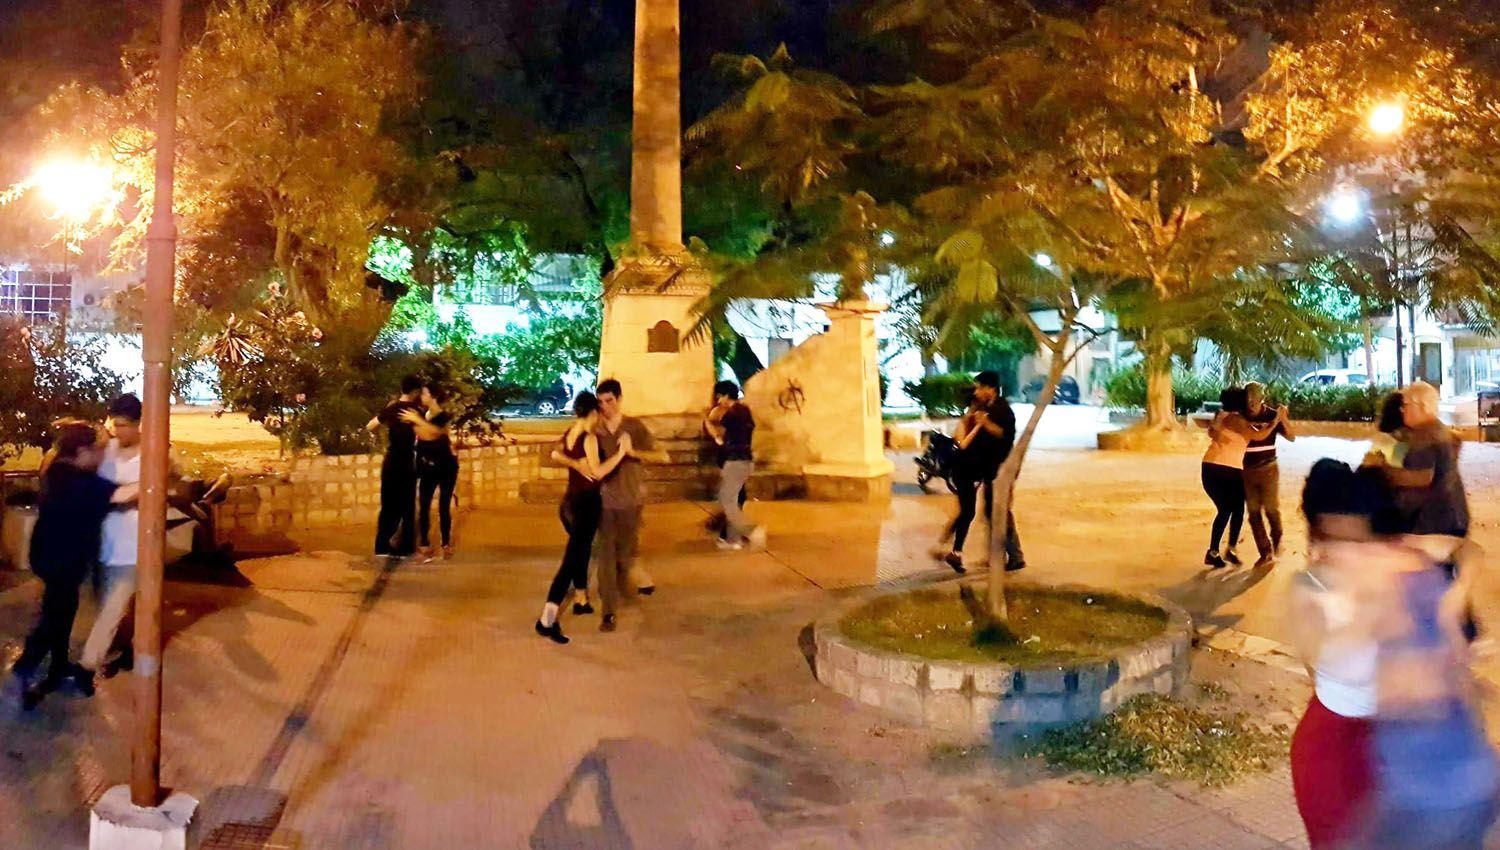 Hasta fines de junio dictaraacuten clases gratuitas de tango en la plaza Lugones